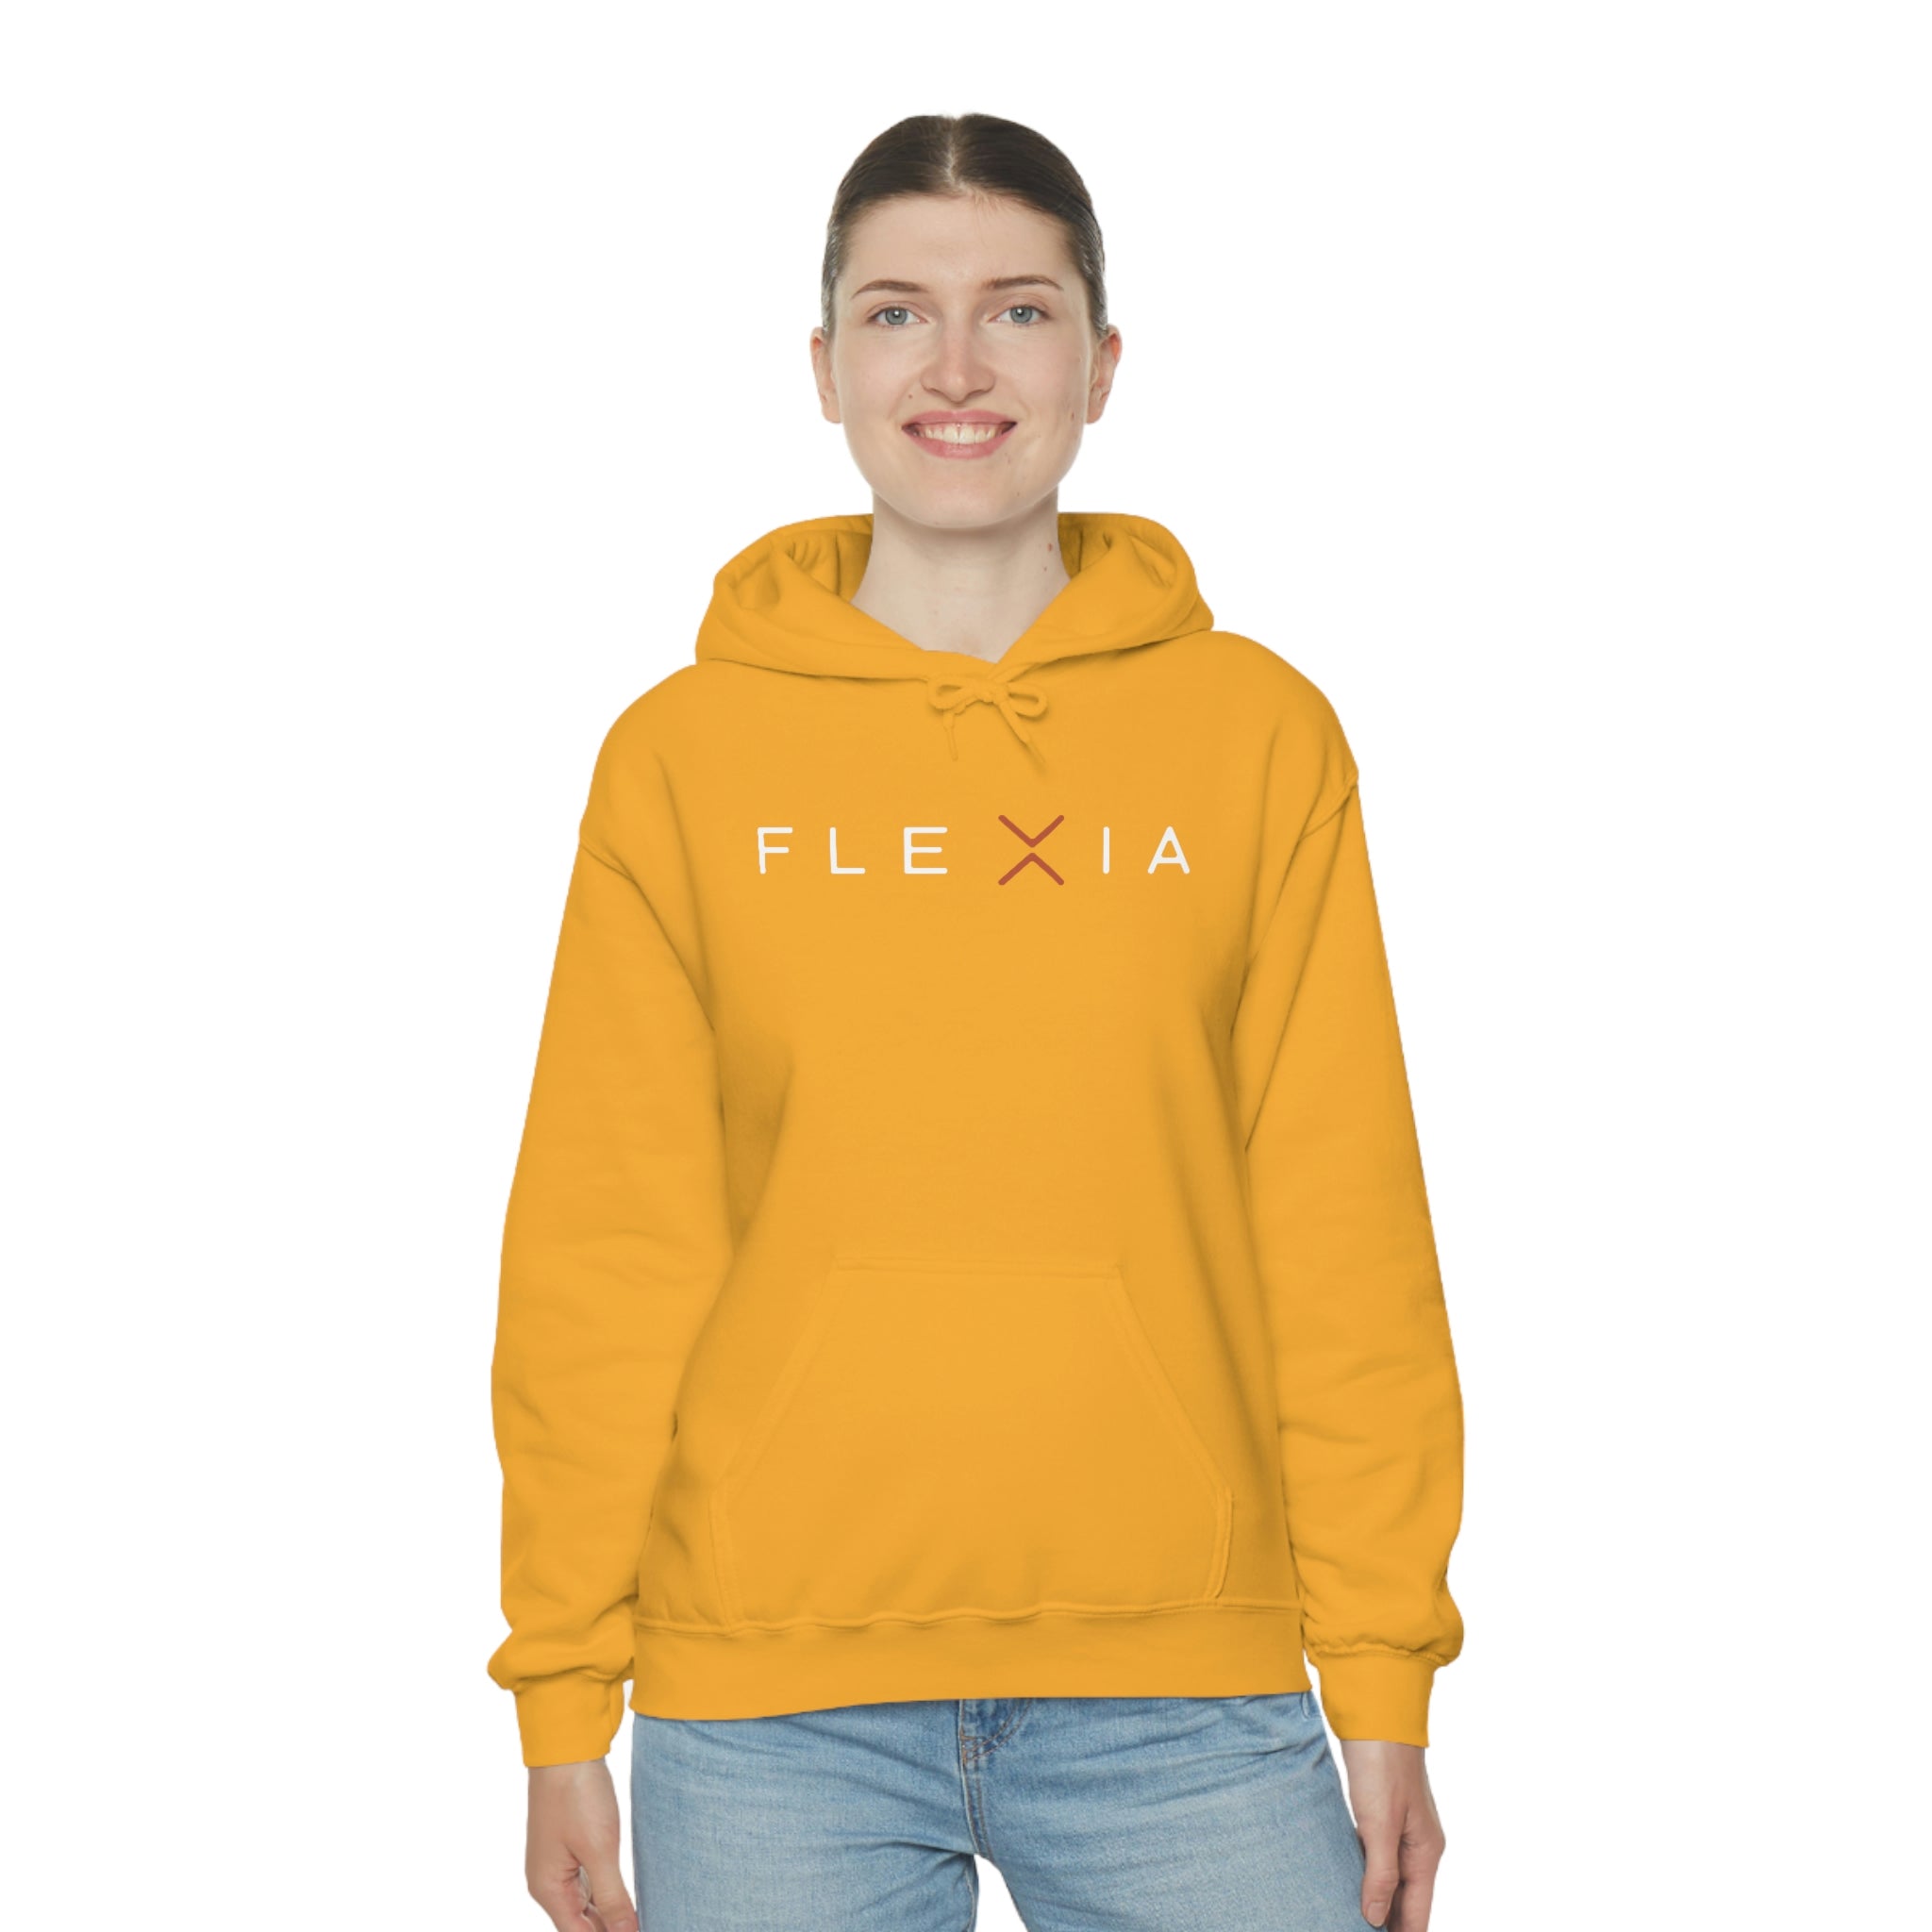 Unisex Hooded Sweatshirt - Flexia